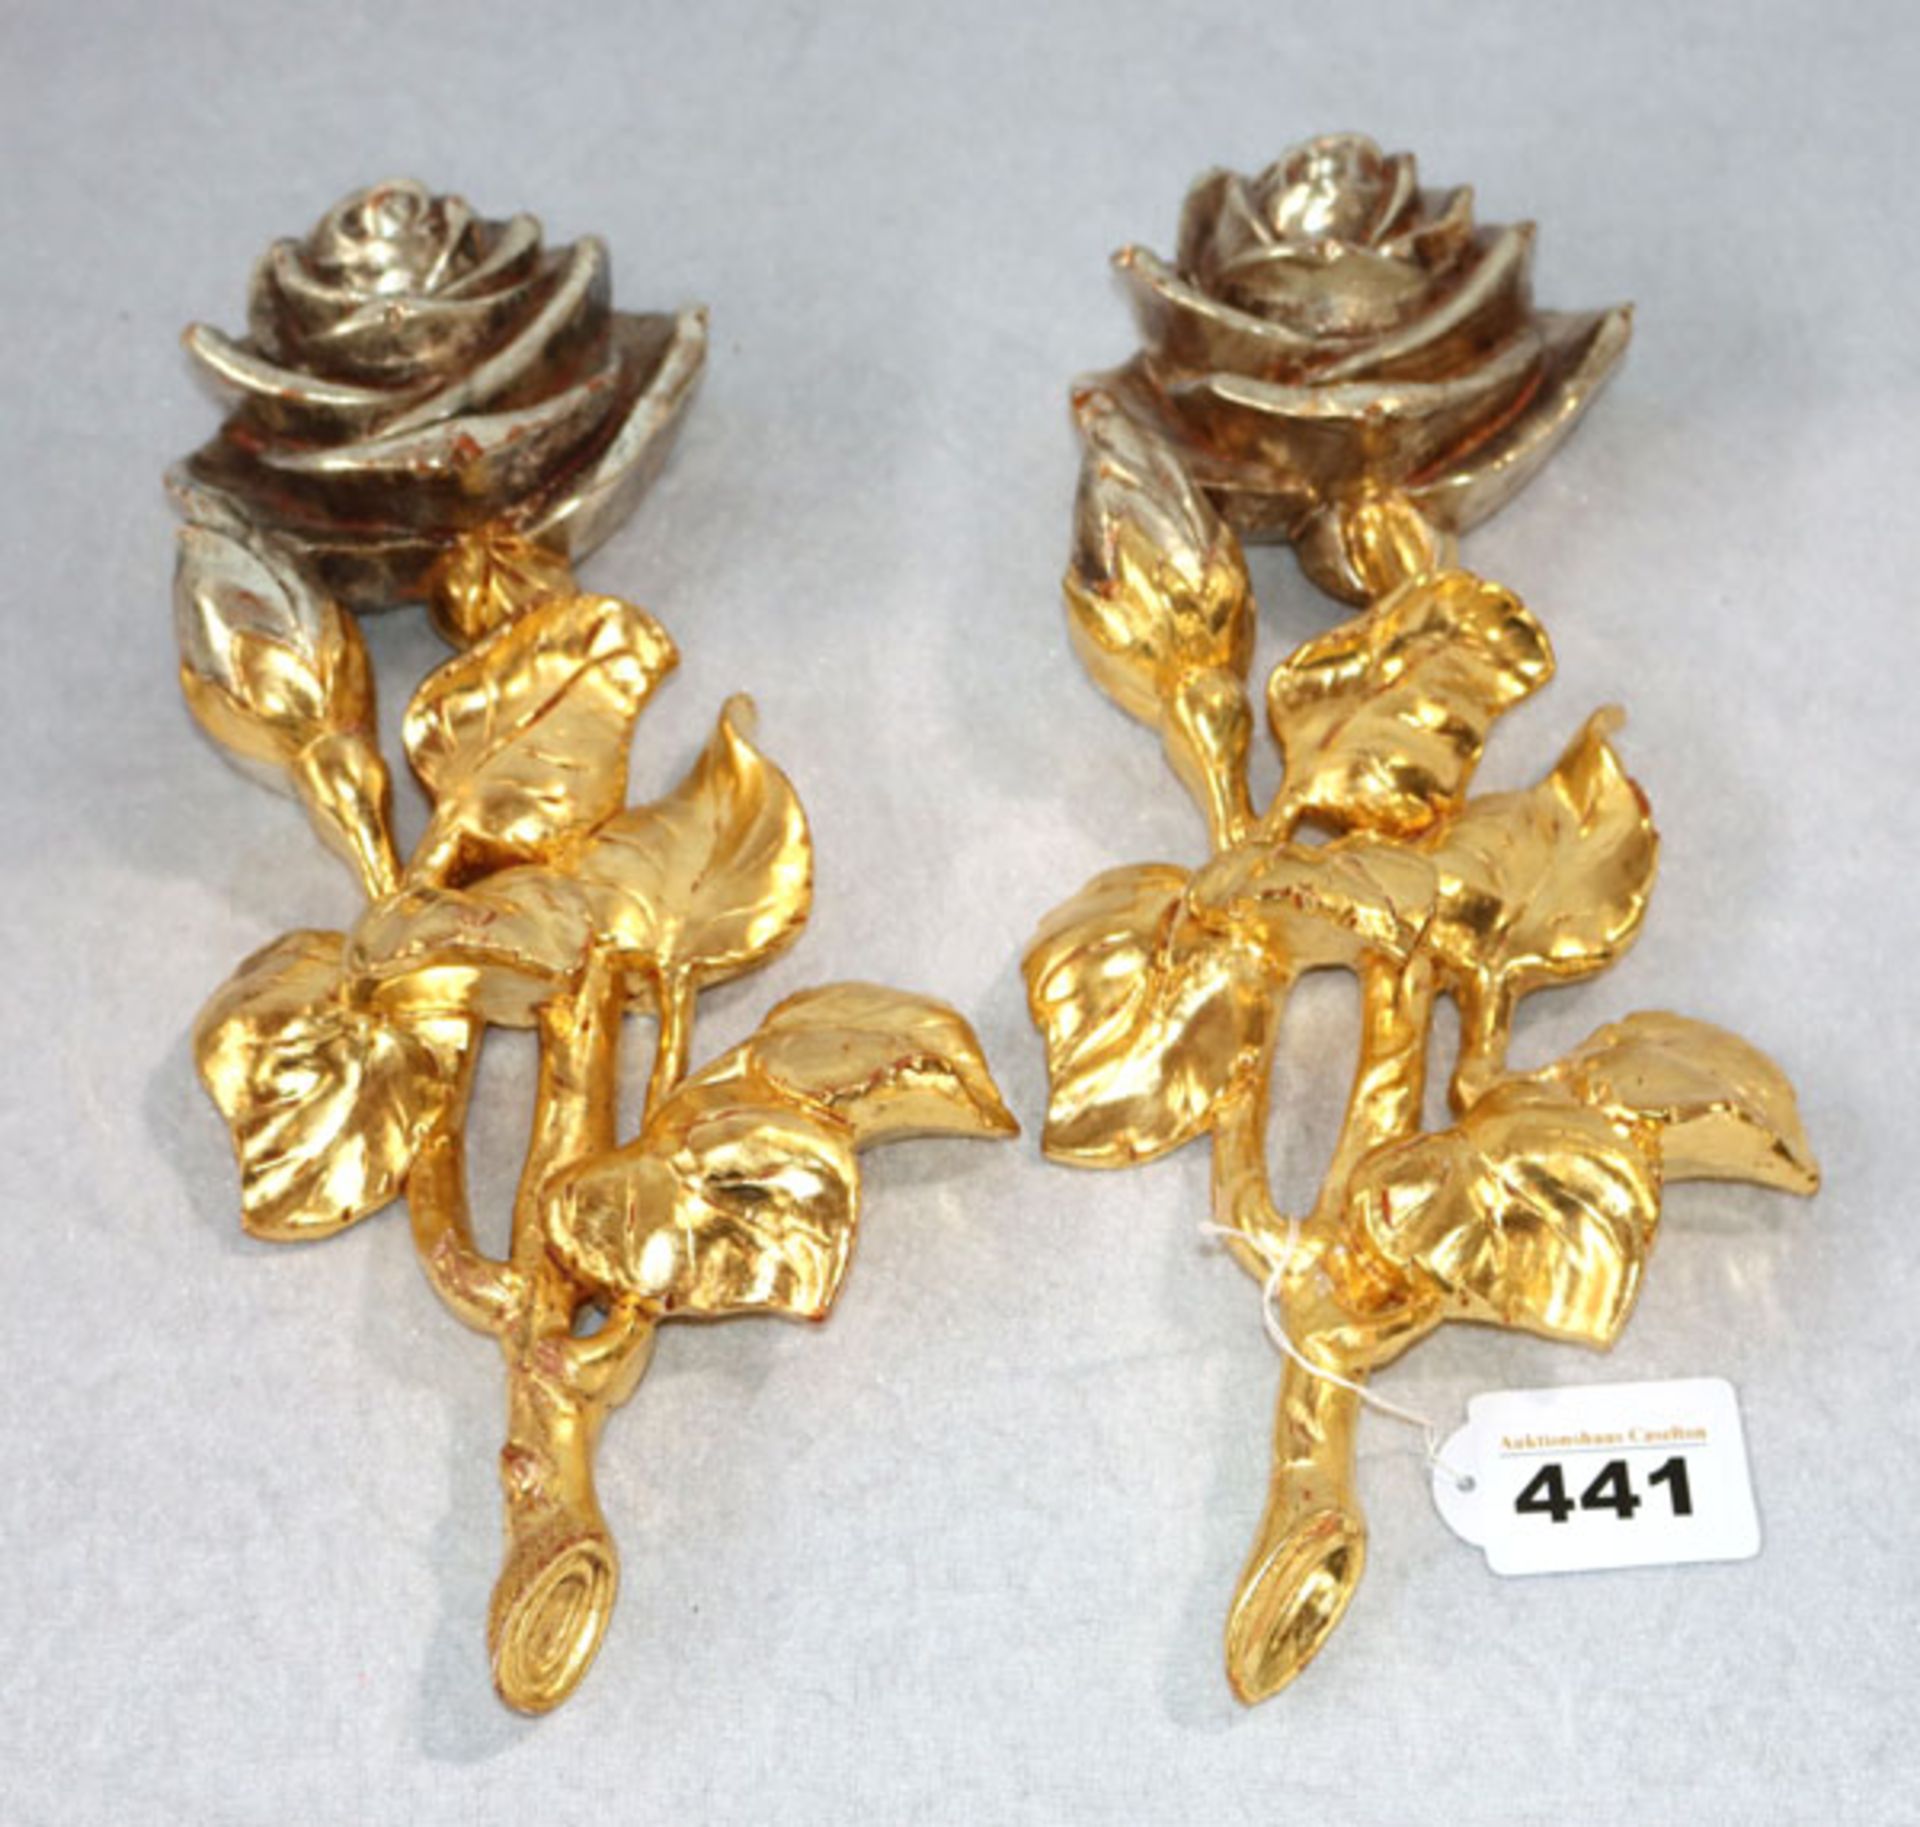 2 Holzornamente 'Rosen', gold/silber gefaßt, rückseitig mit Klebeetikett Holzschnitzerei Toni